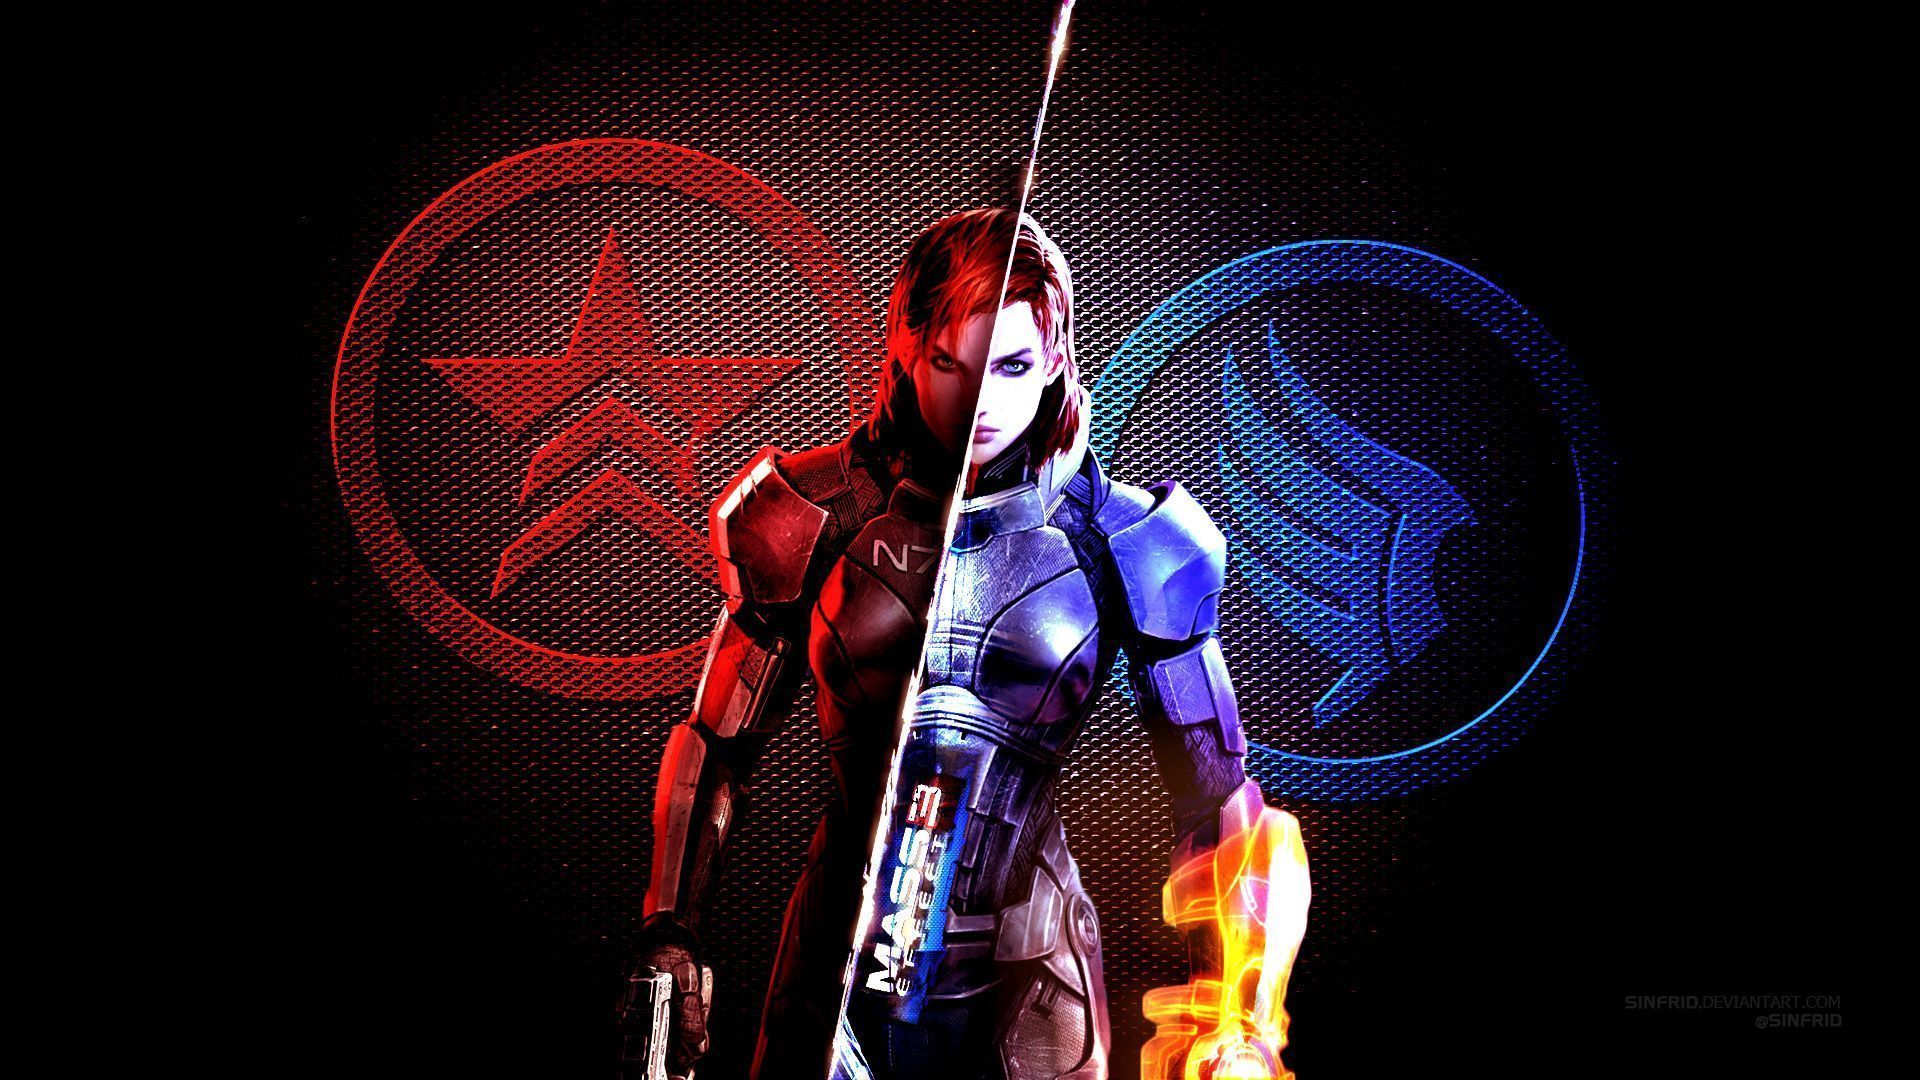 Mass Effect 3 Wallpaper 01 by Sinfrid on DeviantArt